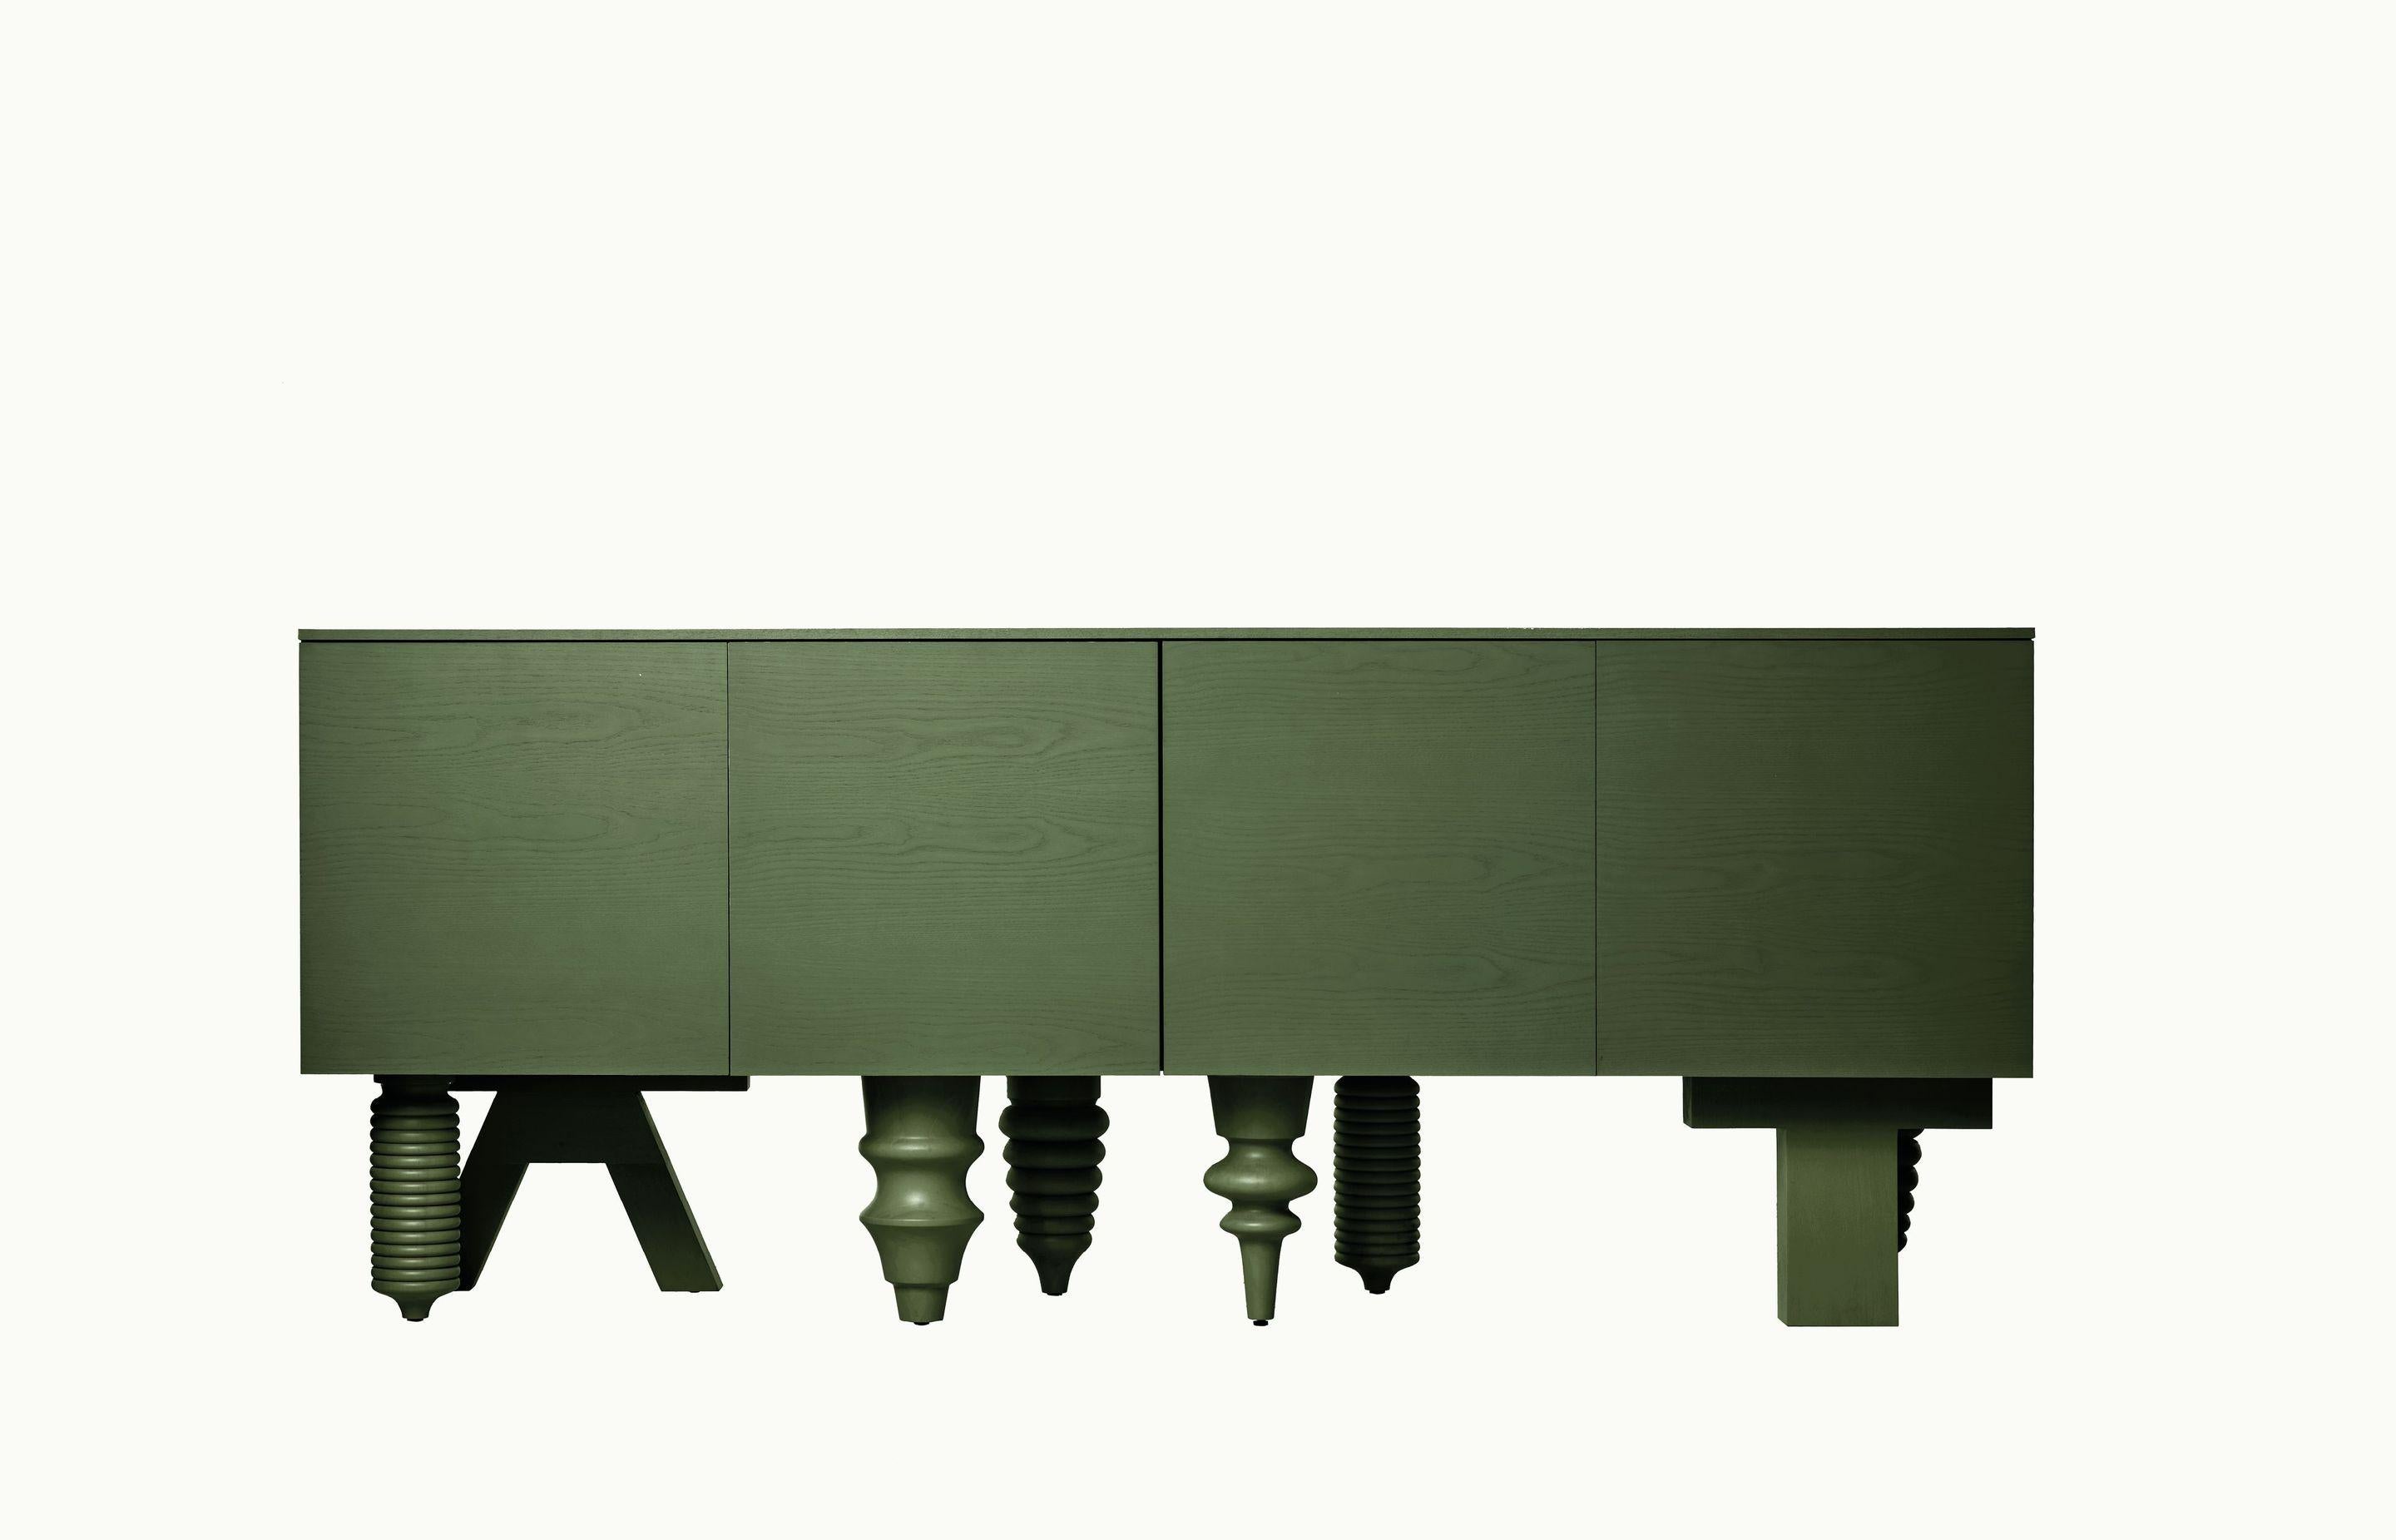 2M Multileg-Schrank in Olivgrün von Jaime Hayon für BD Barcelona

Er kann mit zwölf ausgeklügelten Beinoptionen, individuell gestaltbaren Oberflächen und Farben sowie einer Vielzahl von Stauraumvarianten einzigartig konfiguriert werden. Das Multileg